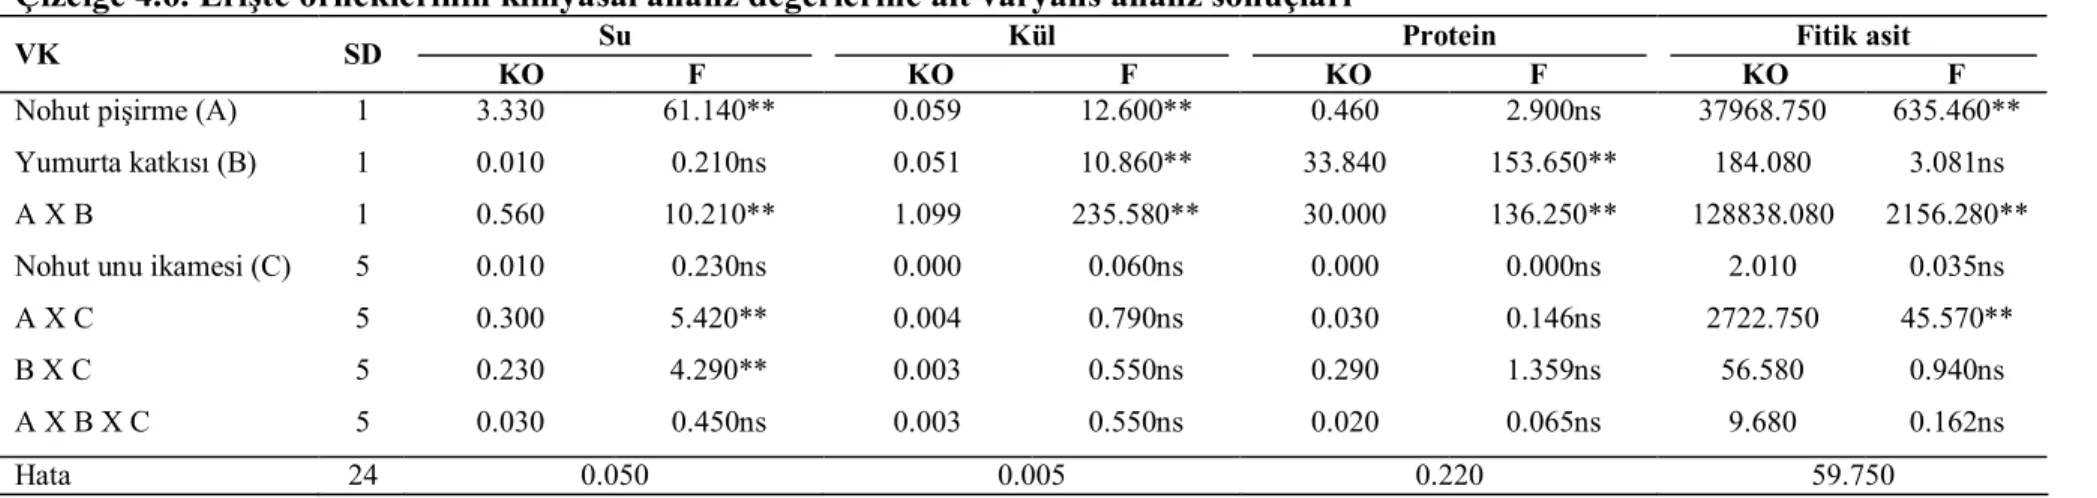 Çizelge 4.6. Erişte örneklerinin kimyasal analiz değerlerine ait varyans analiz sonuçları  VK  SD  Su            KO                   F  Kül           KO                      F  Protein           KO                     F  Fitik asit  KO                    